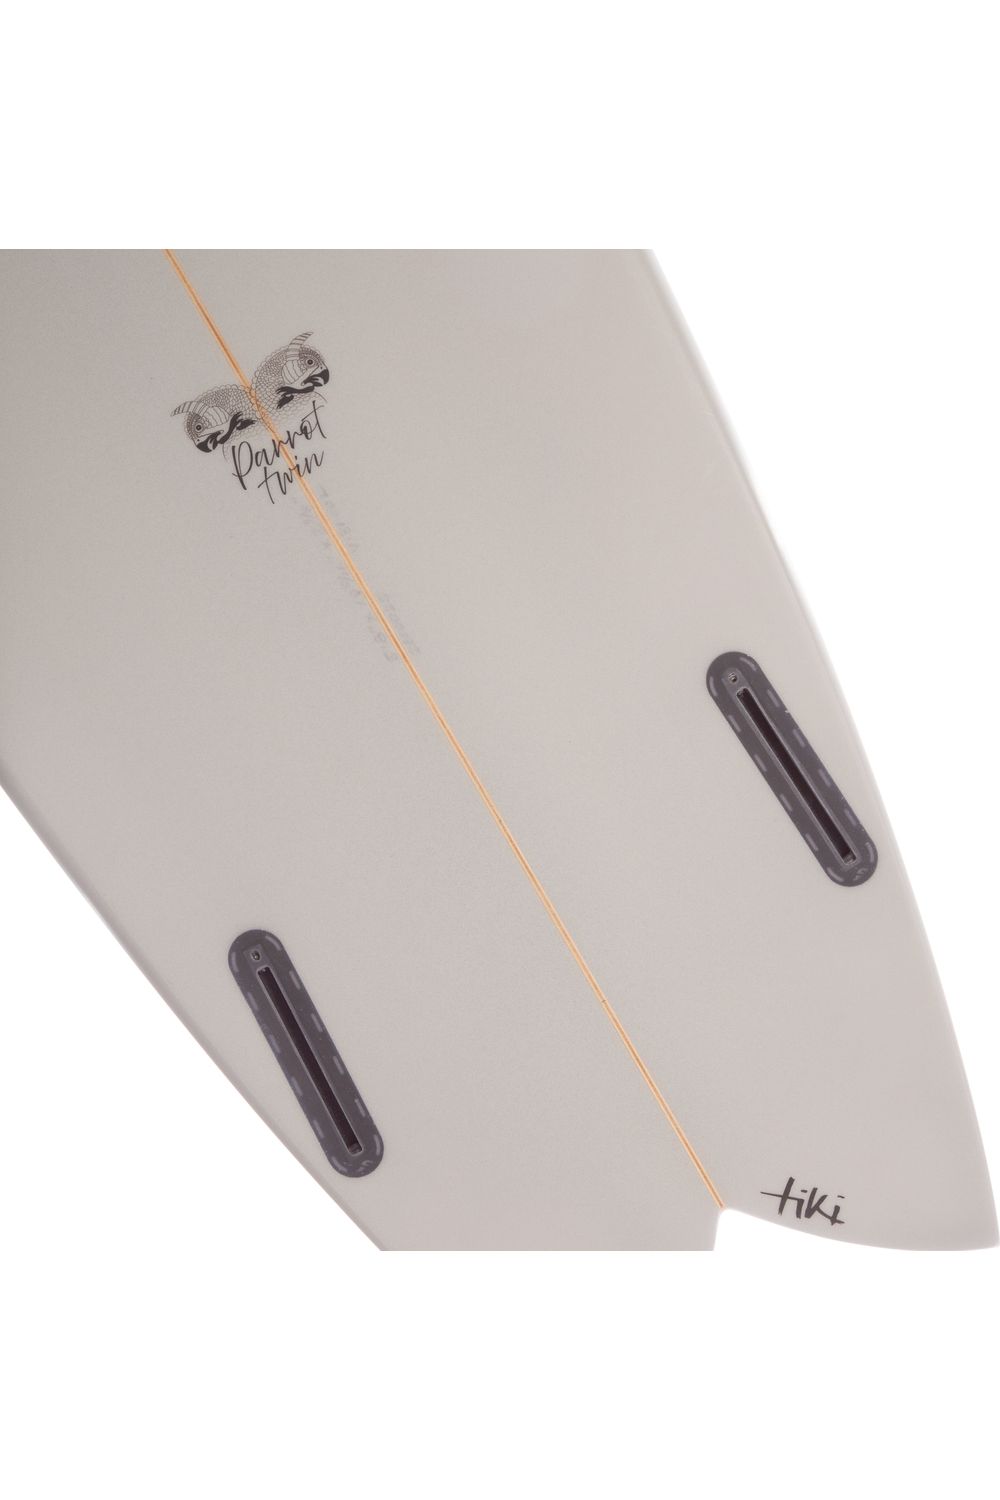 Tiki Custom Surfboard - 5'8 Parrot Twin - Seacrest Grey